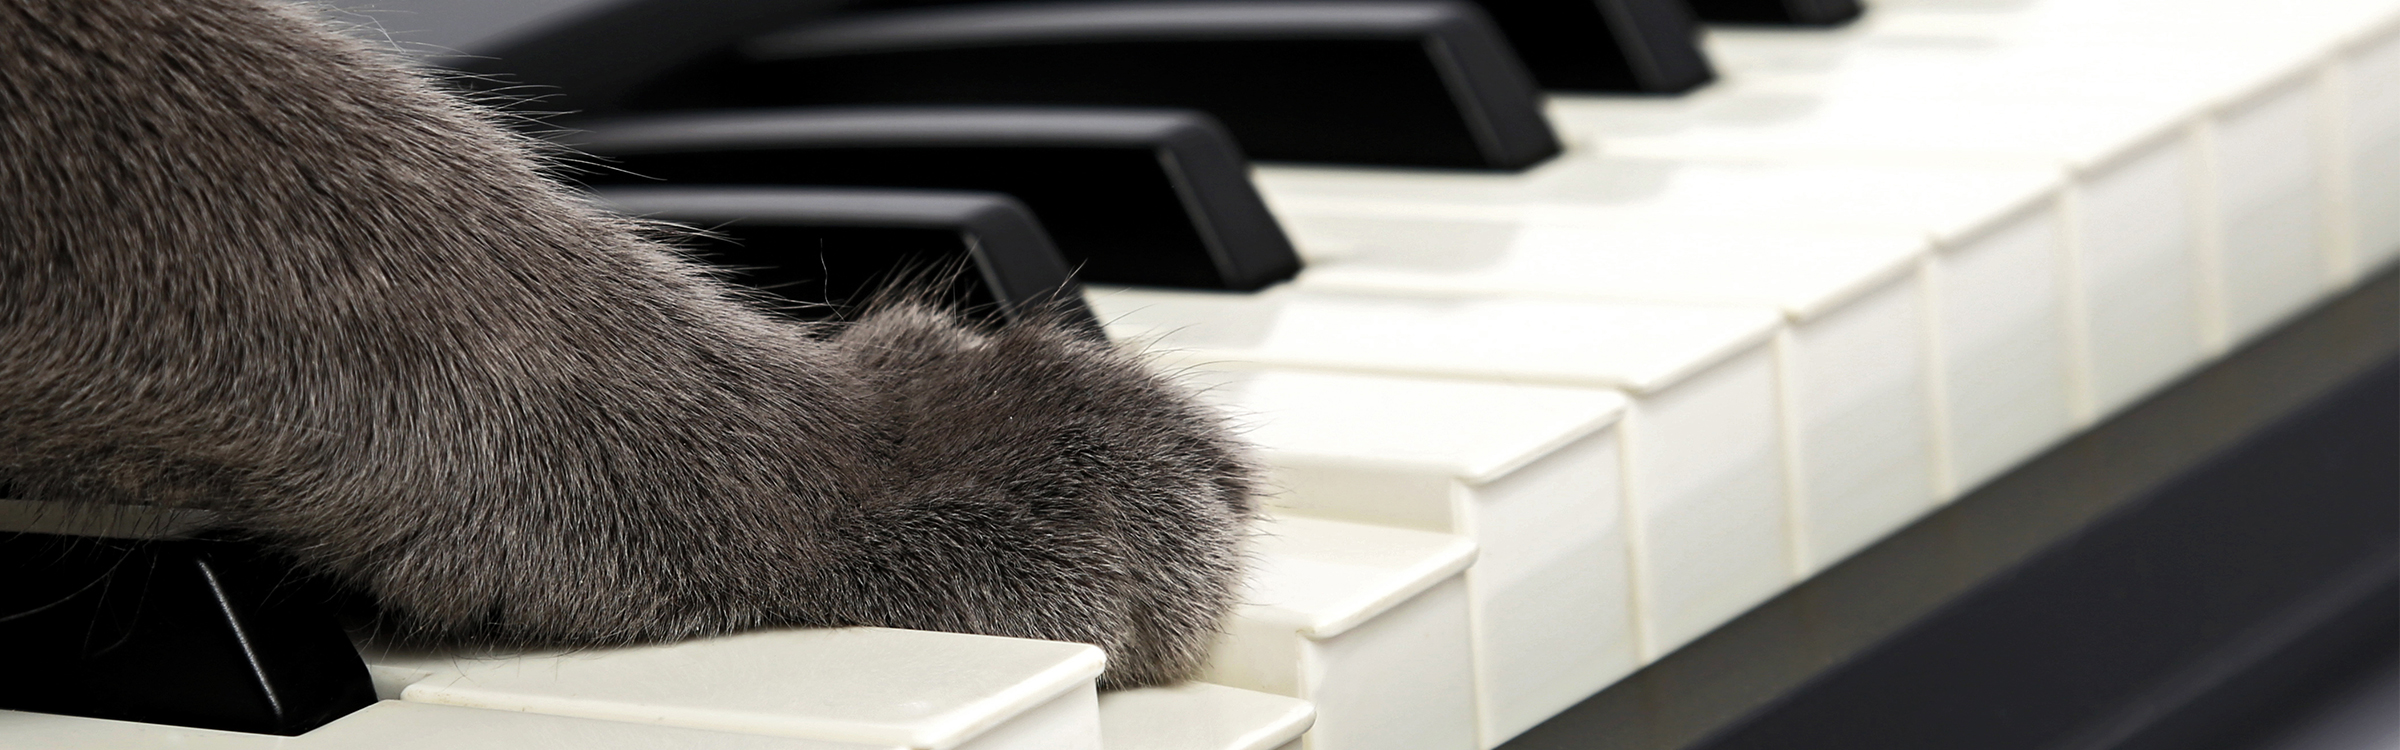 Kattenmuziek header